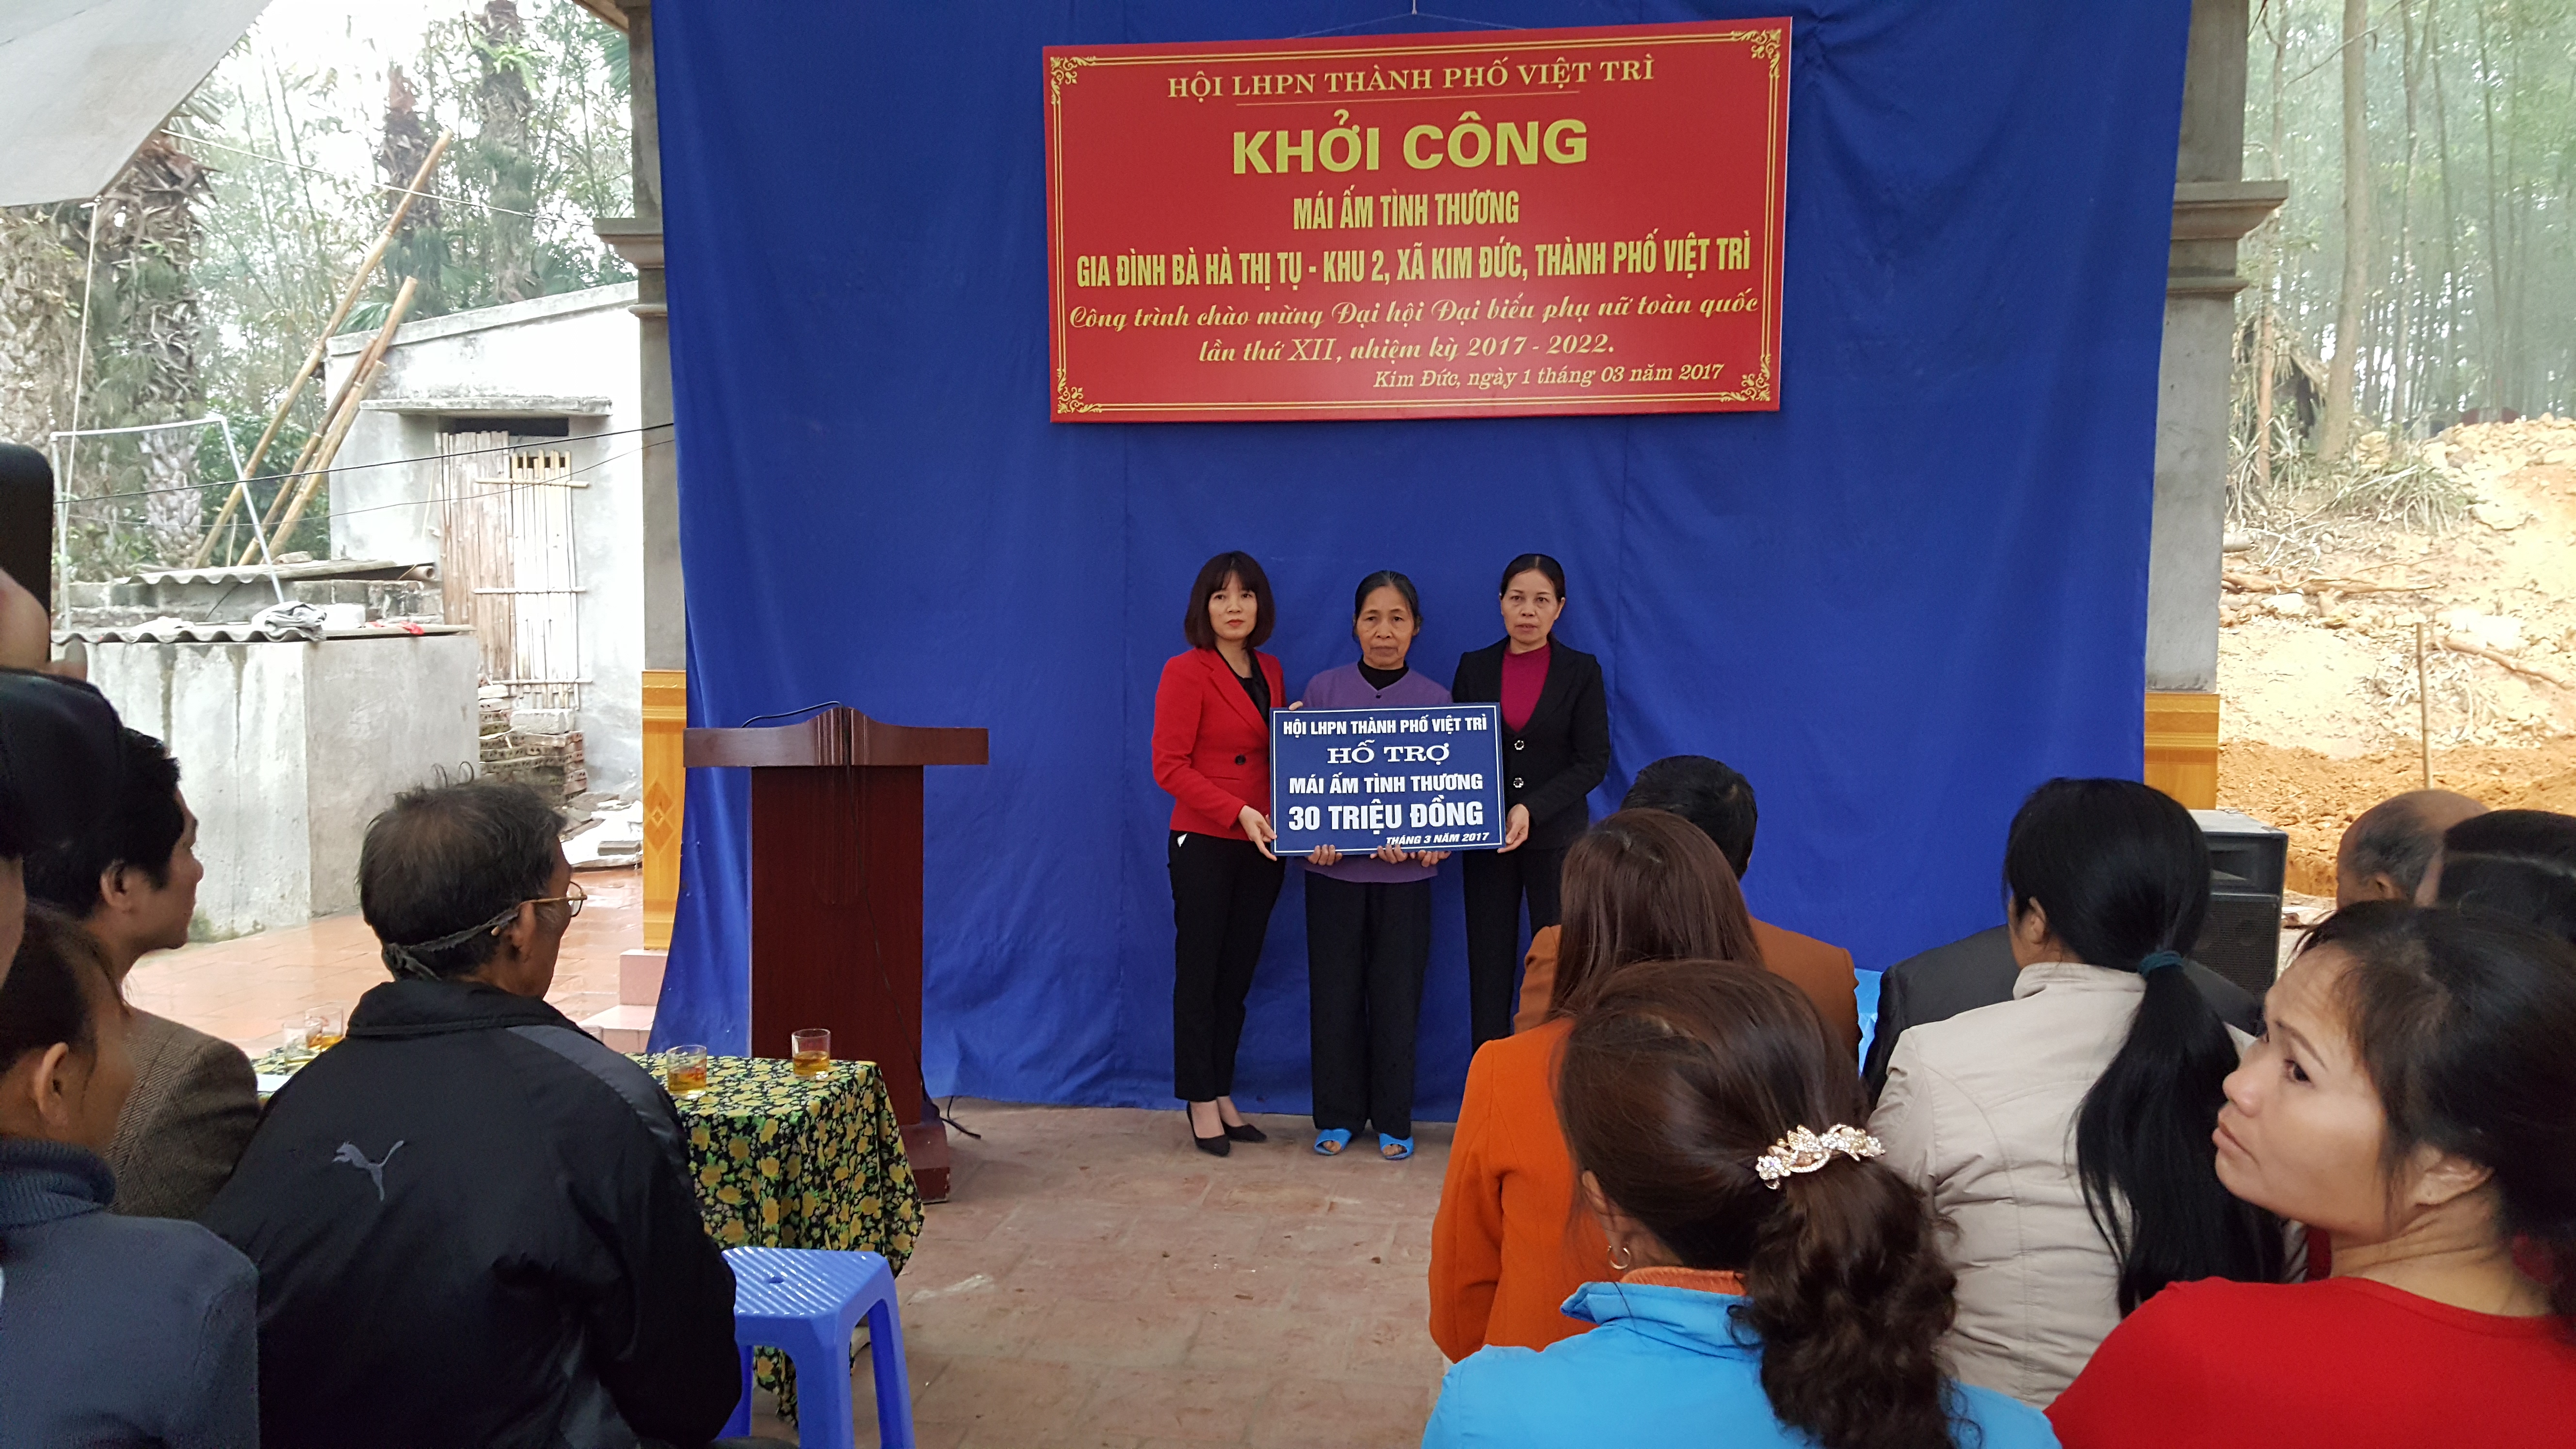 Việt Trì khởi công xây dựng “Mái ấm tình thương” 